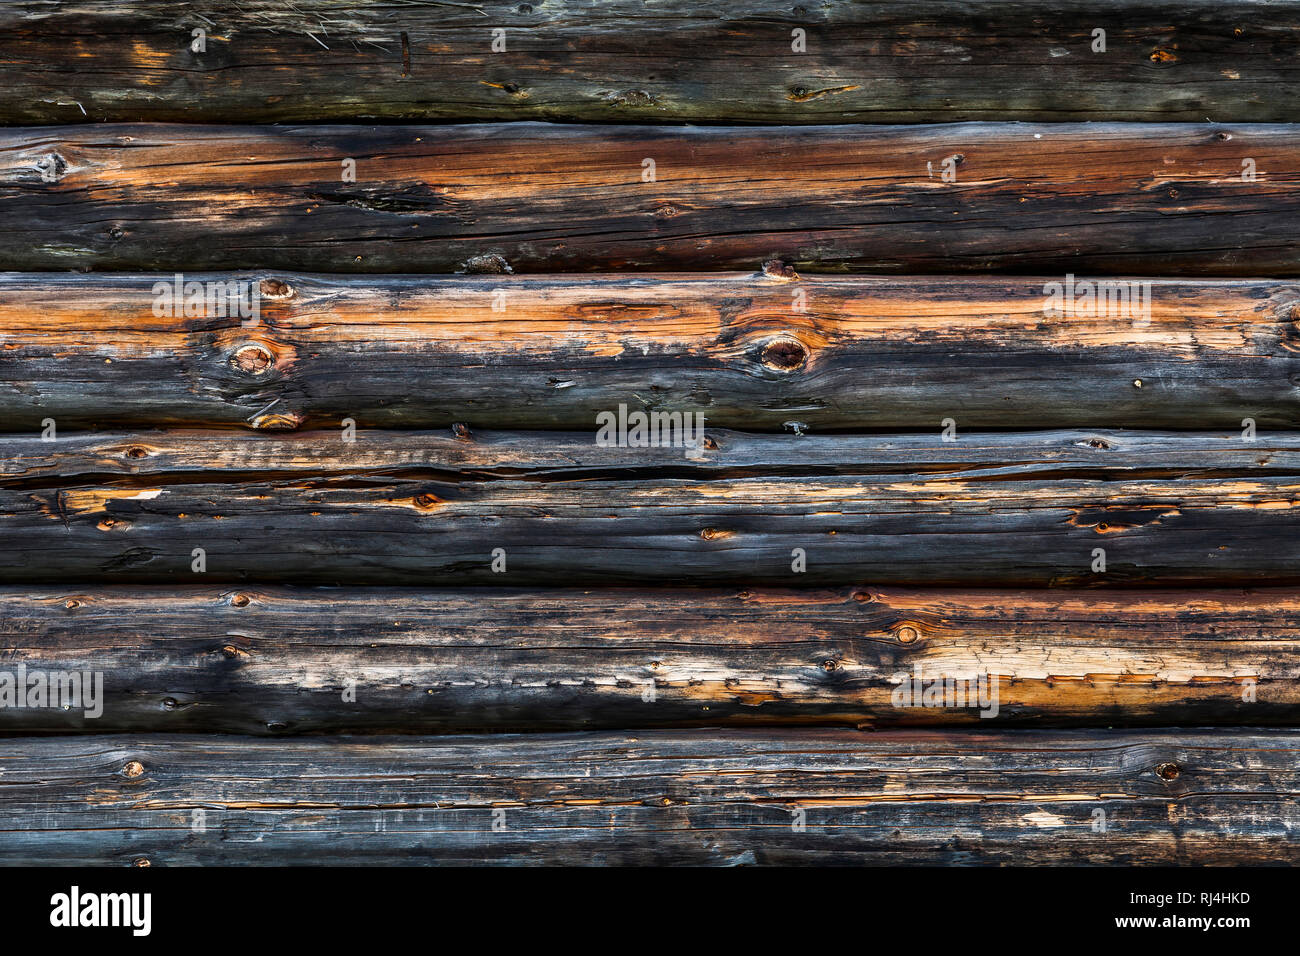 Holzwand aus alten unbehandelten vergrauten Balken, S?dtirol, Italien, Europa, Stock Photo